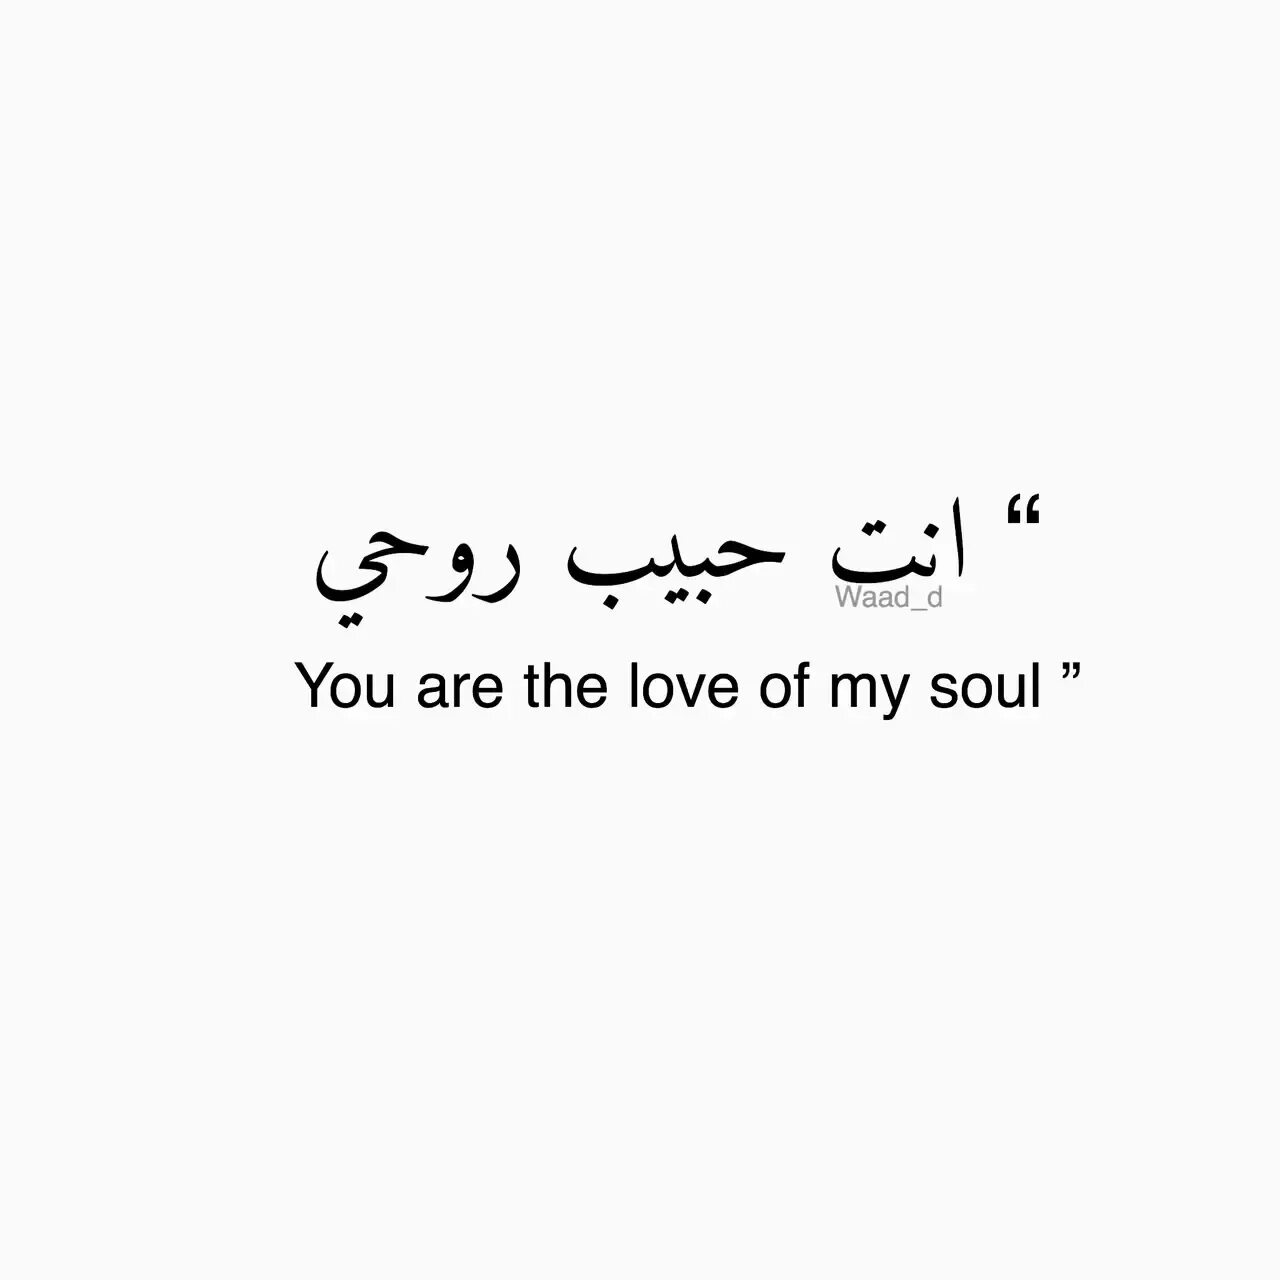 Фразы на арабском языке. Красивые слова на арабском. Красивые фразы на арабском. Арабские фразы на арабском. Красивые надписи на арабском языке.